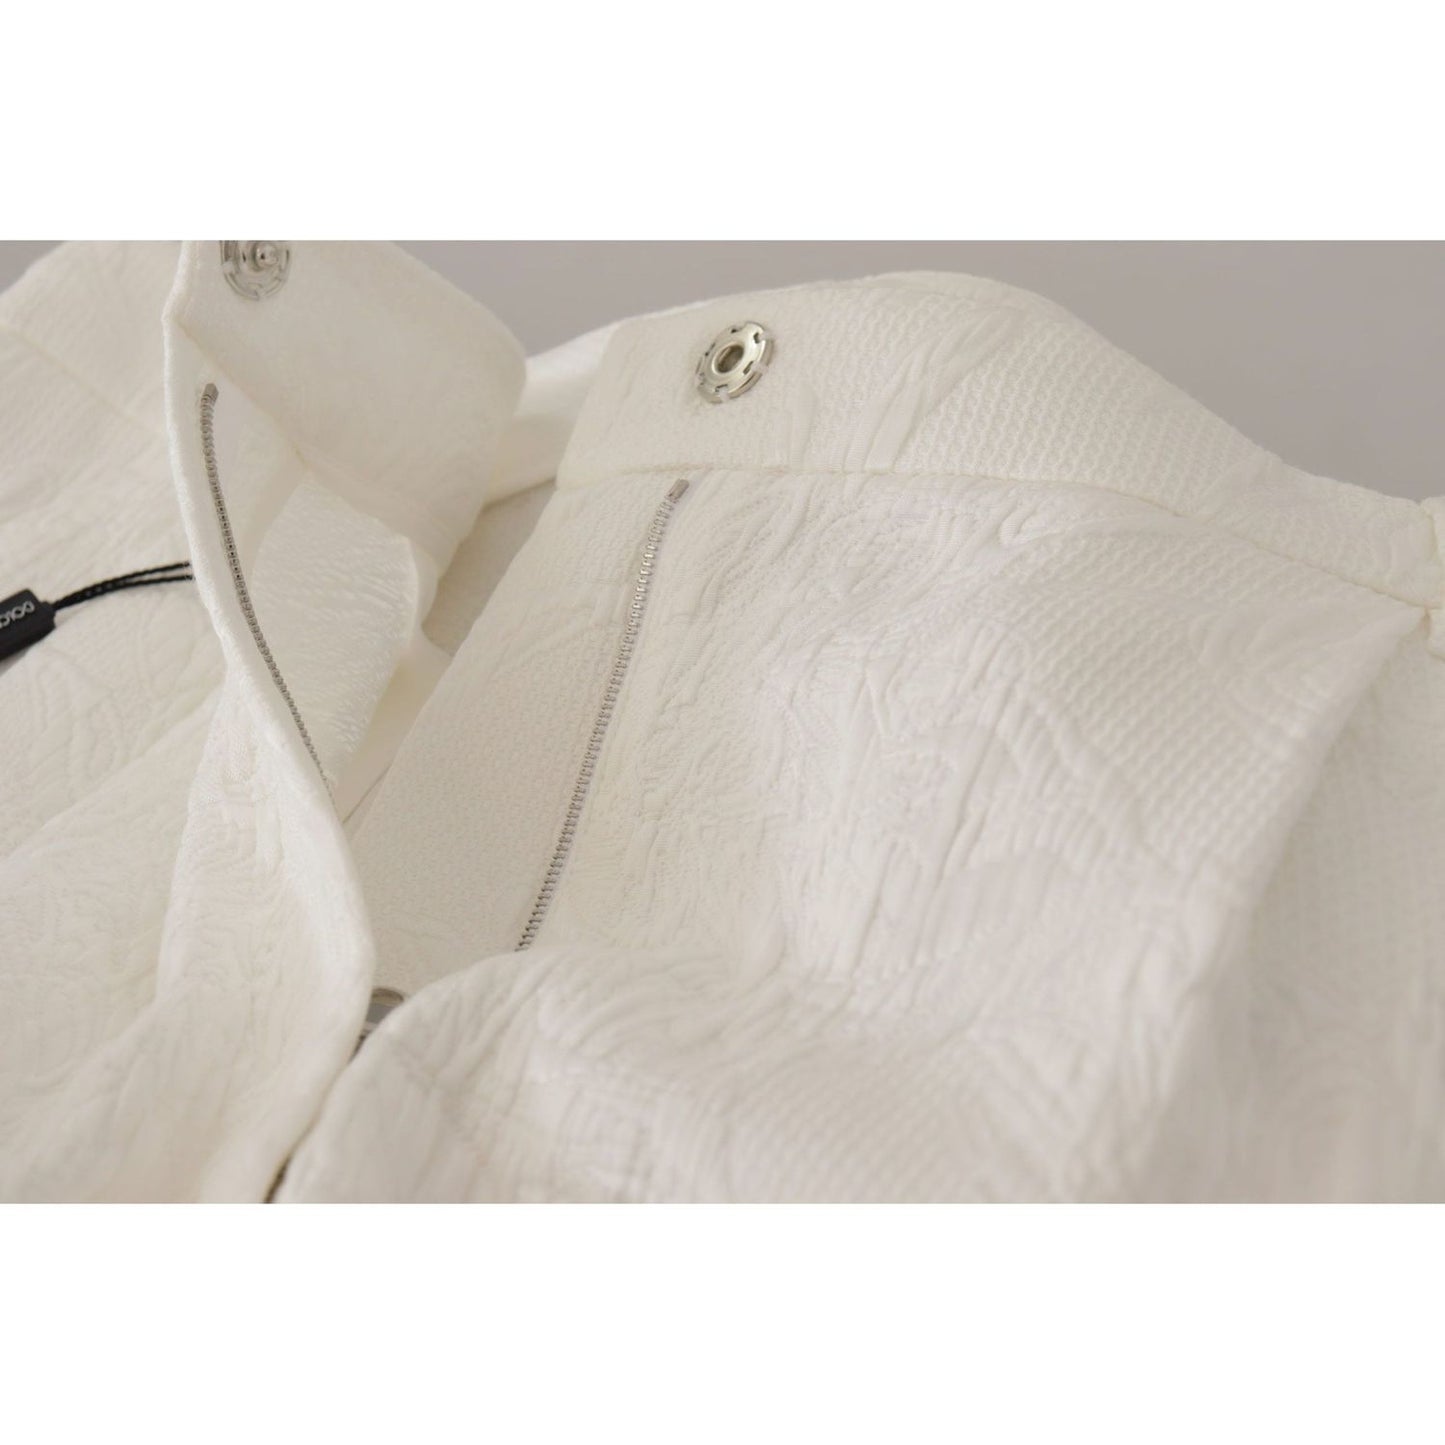 Dolce & GabbanaElegant High Waist White Culotte ShortsMcRichard Designer Brands£339.00